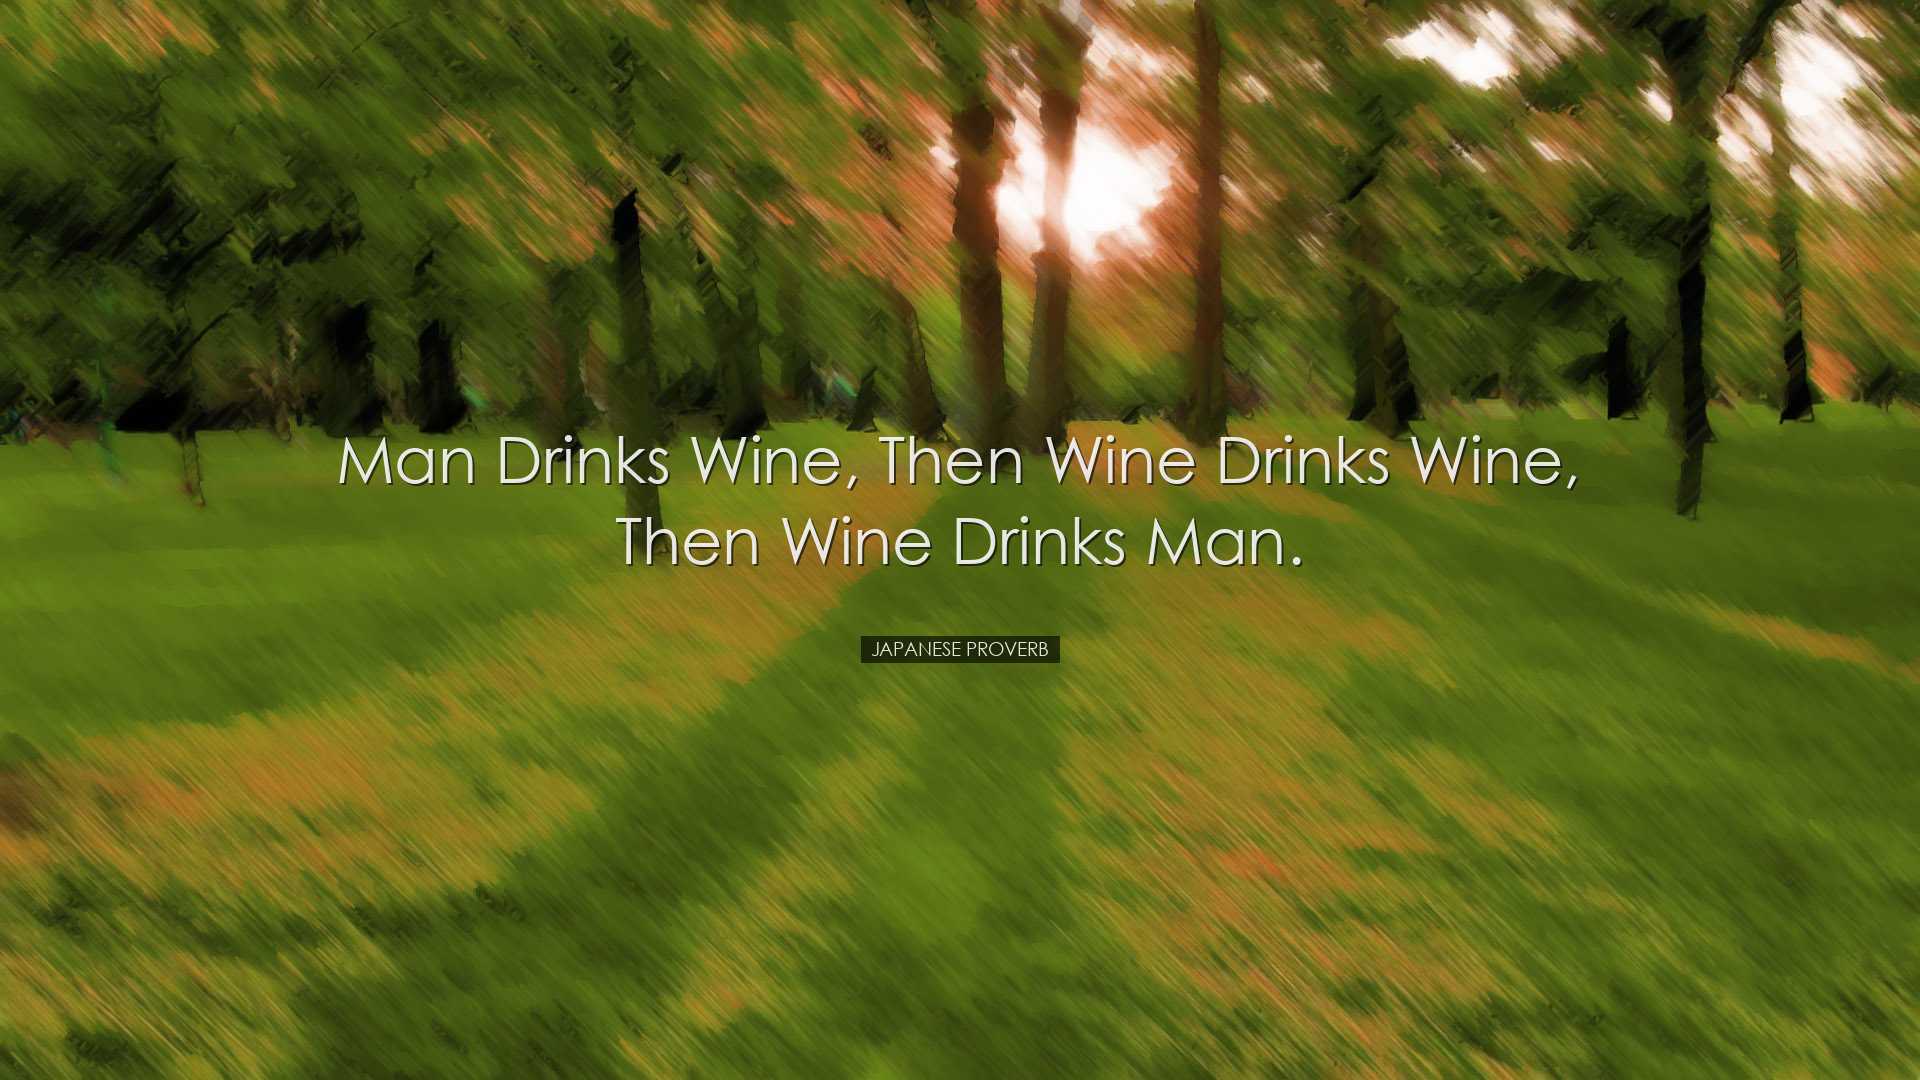 Man drinks wine, then wine drinks wine, then wine drinks man. - Ja